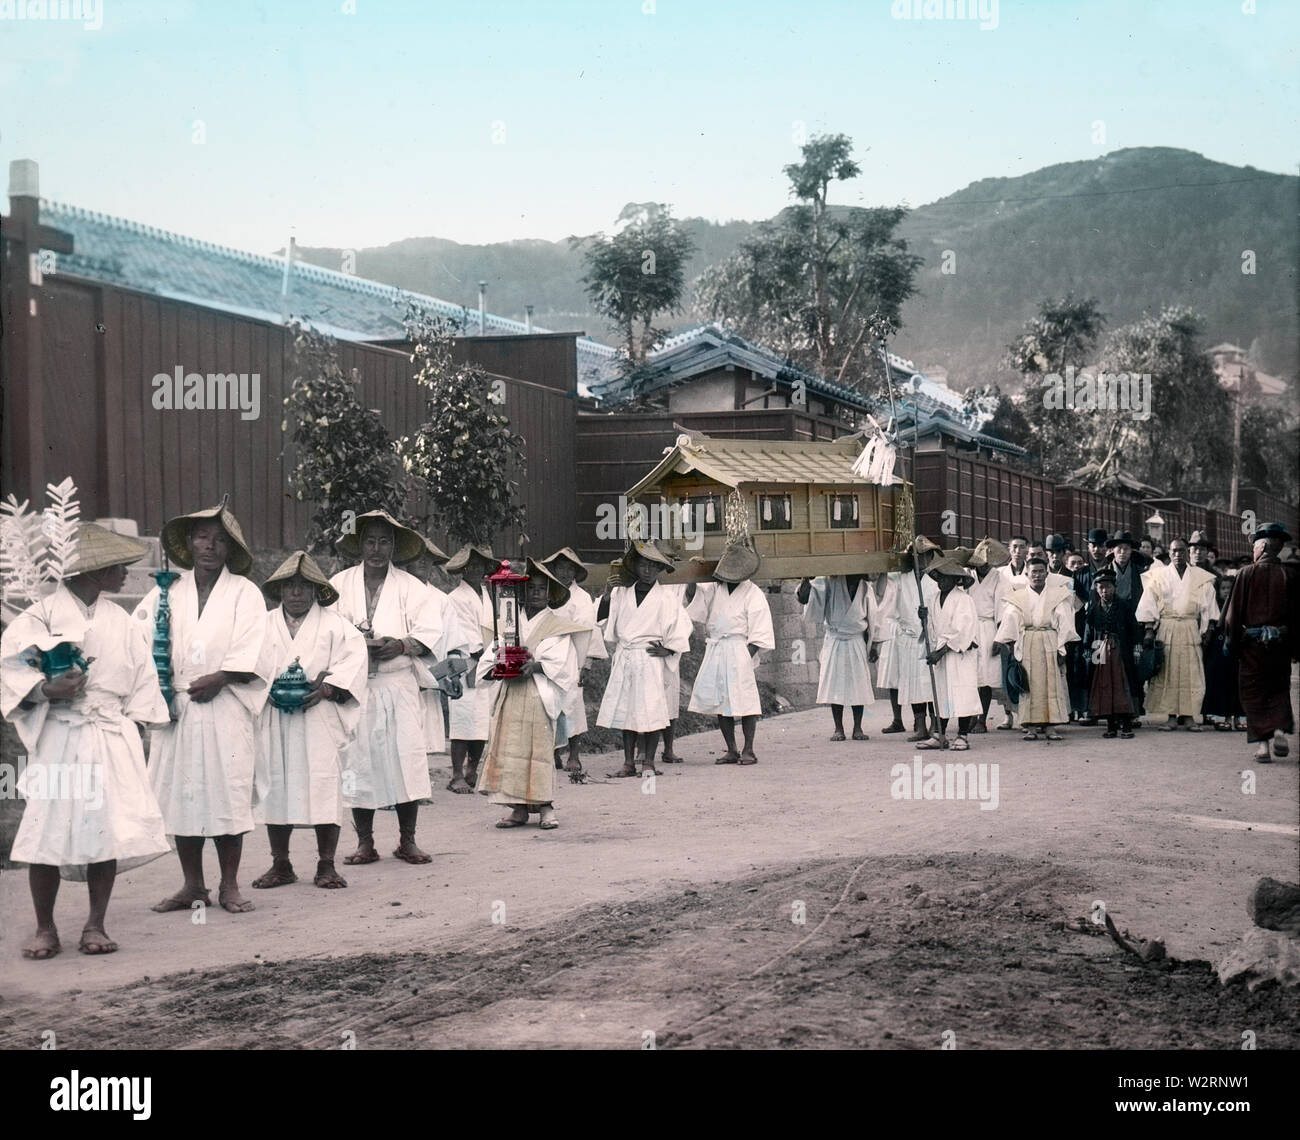 [1890s Japan - Japanische Trauerzug] - Trauerzug. Beachten Sie die weiße Kleidung. Weiß ist das asiatische Symbol der Trauer. 19 Vintage Glas schieben. Stockfoto